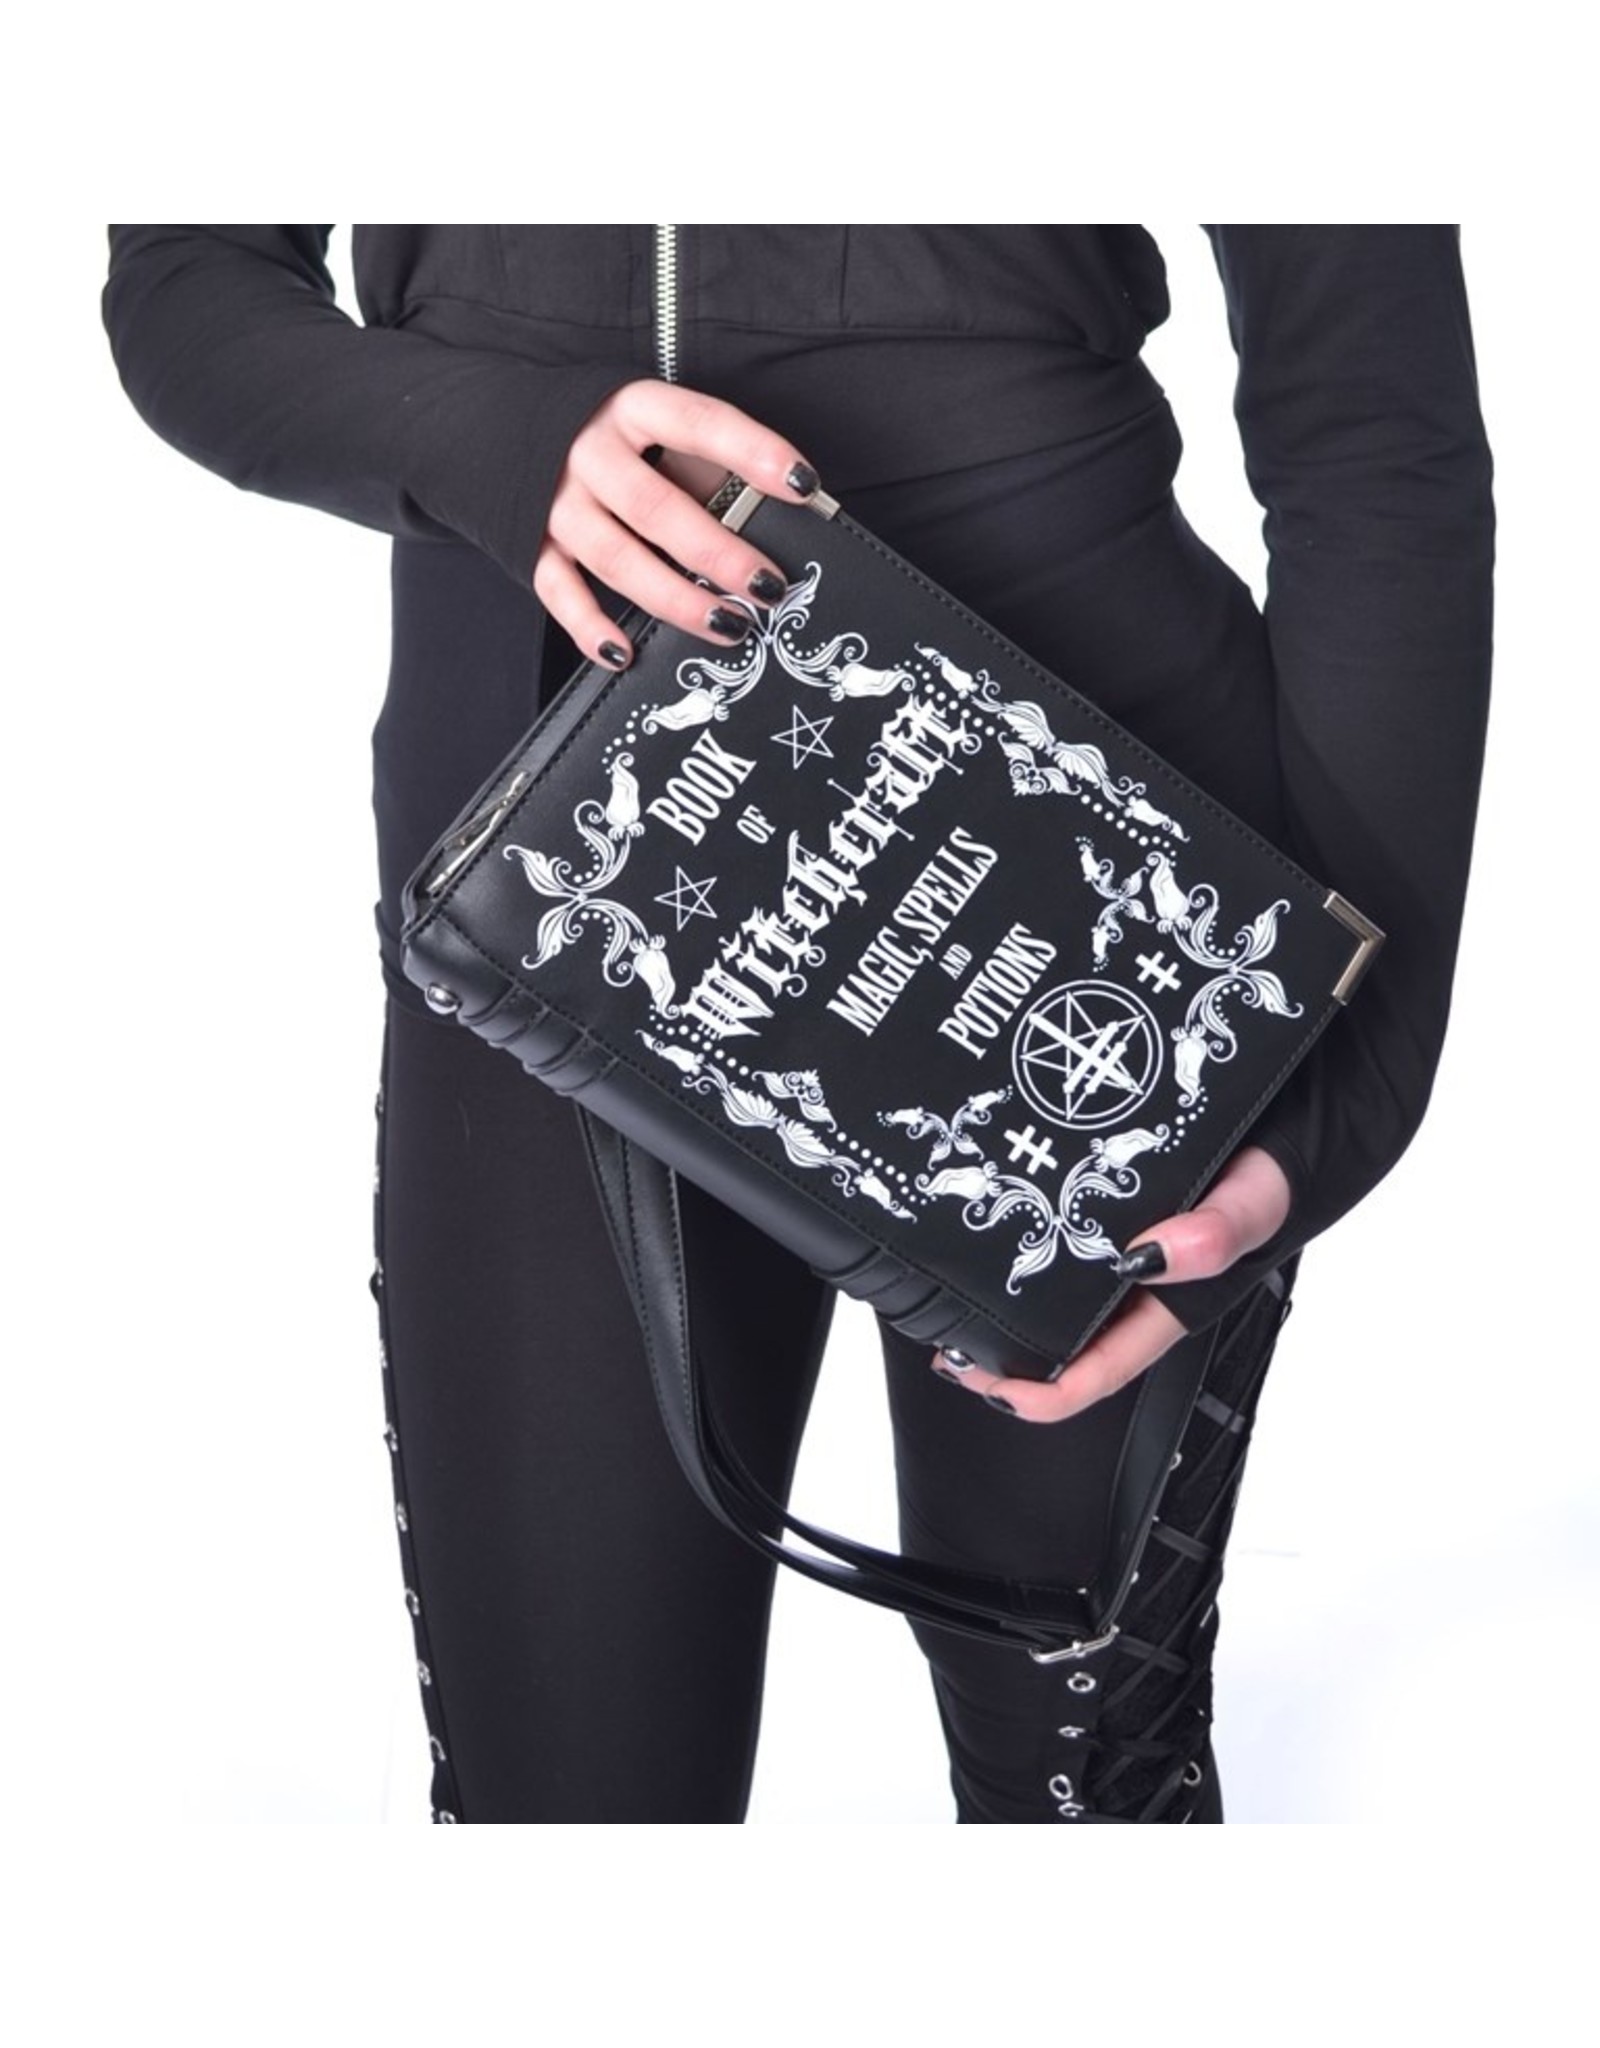 Poizen Industries Gothic bags Steampunk bags - Witchcraft Book handbag  Poizen Industries